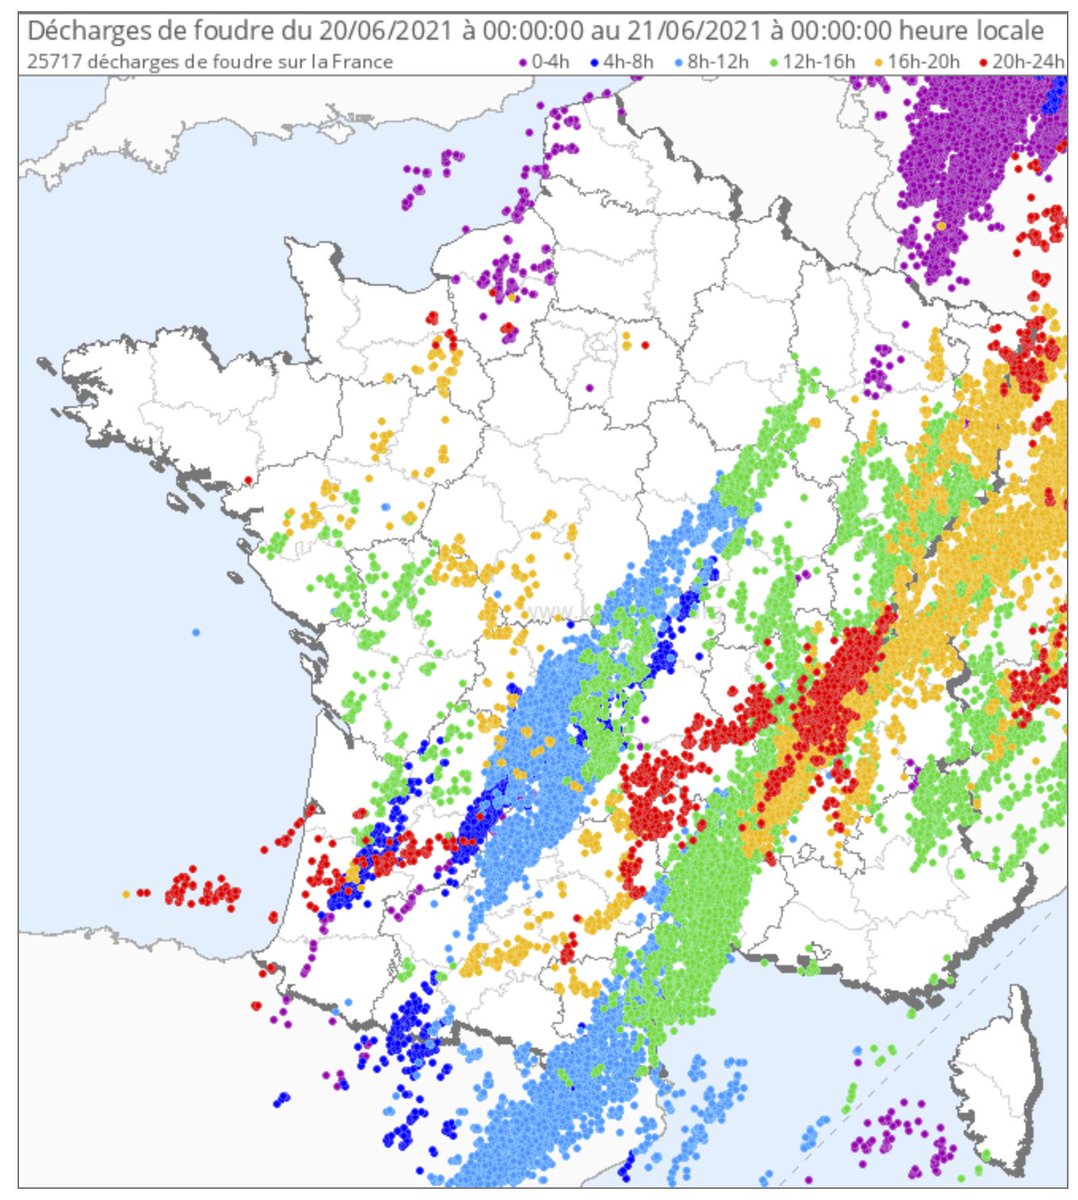 Ce 20 juin fut une journée encore fortement électrique, avec près de 26 000 #éclairs comptabilisés. L'#Ardèche et la #Corrèze ont été les départements les plus foudroyés. Retrouvez toutes nos cartes sur notre page -> 